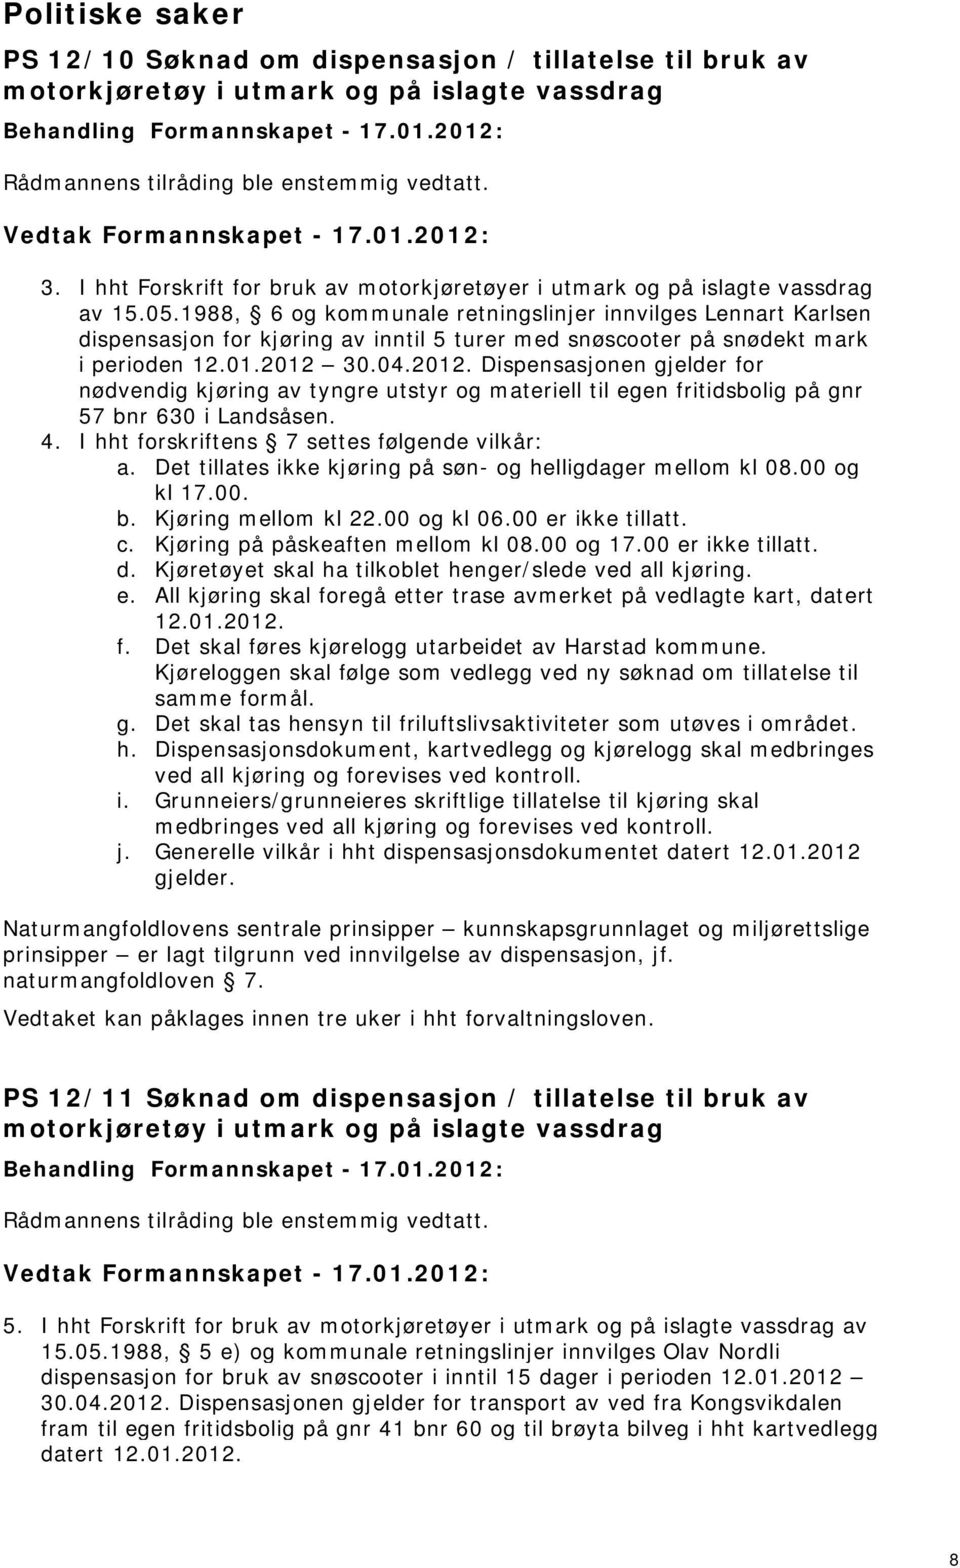 1988, 6 og kommunale retningslinjer innvilges Lennart Karlsen dispensasjon for kjøring av inntil 5 turer med snøscooter på snødekt mark i perioden 12.01.2012 